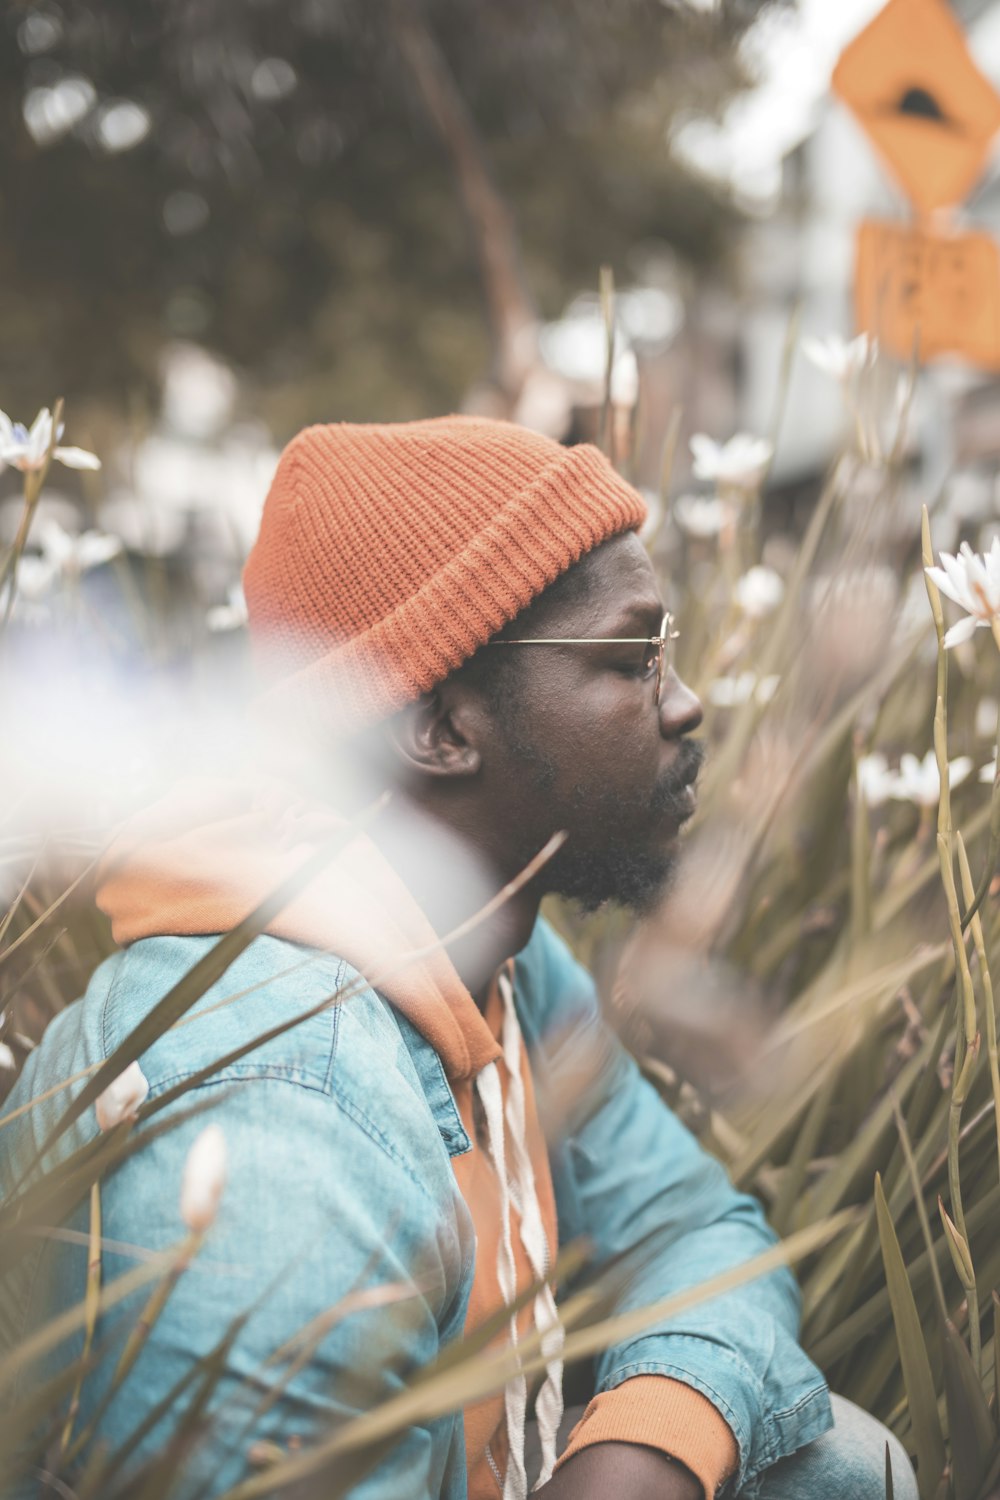 茶色の草のそばでオレンジ色のニット帽をかぶった男性のセレクティブフォーカス写真